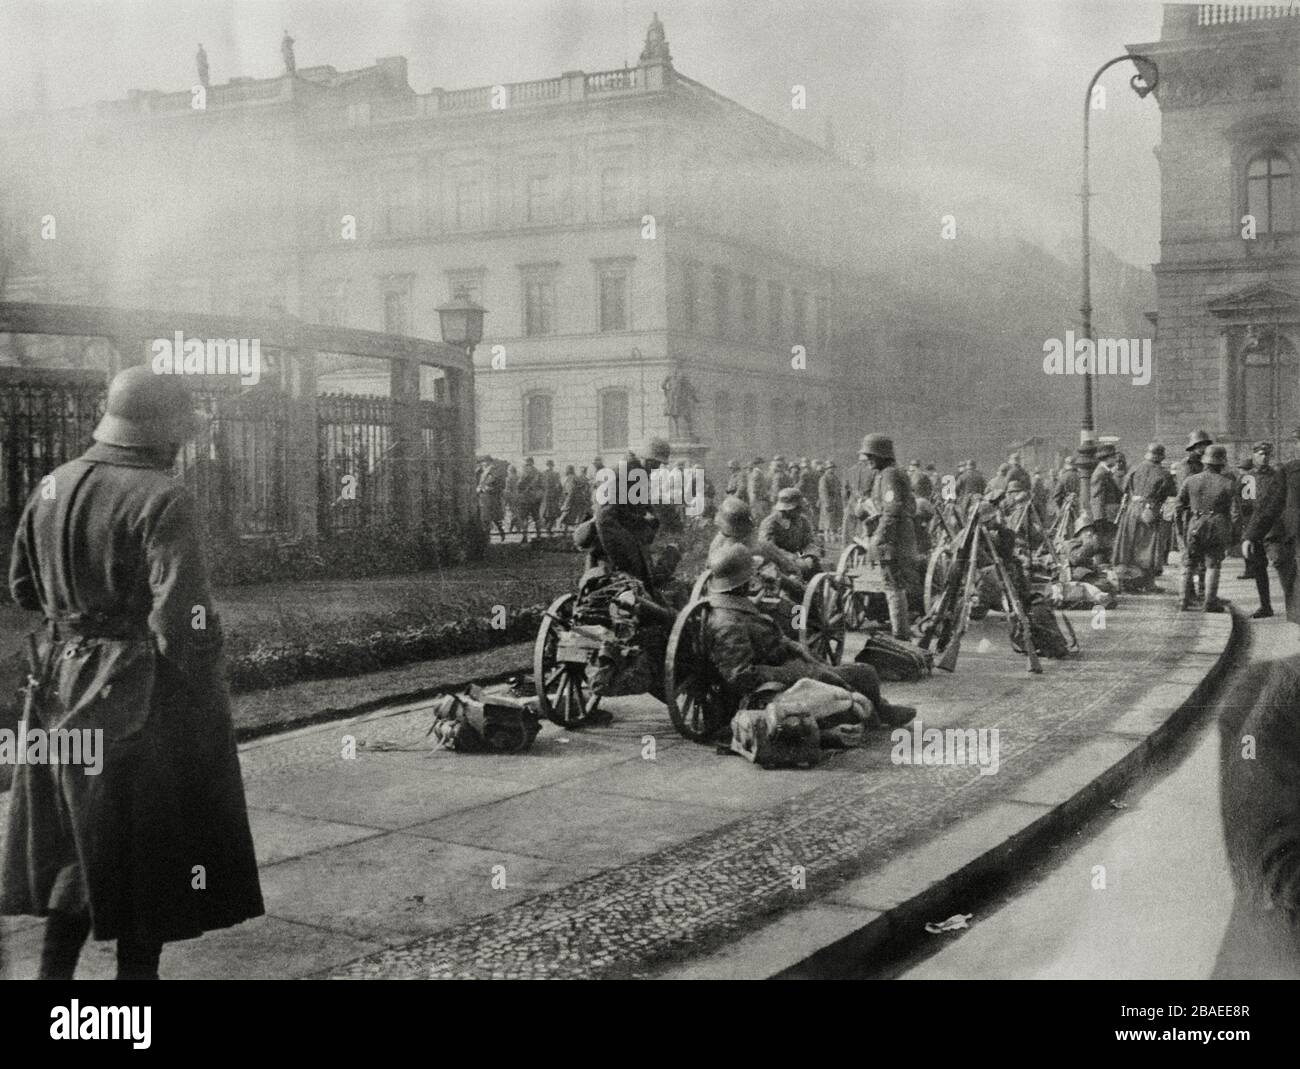 Ancienne photo de la révolution à Berlin, soldats avec mitrailleuses dans les rues de Berlin. 1919 Banque D'Images